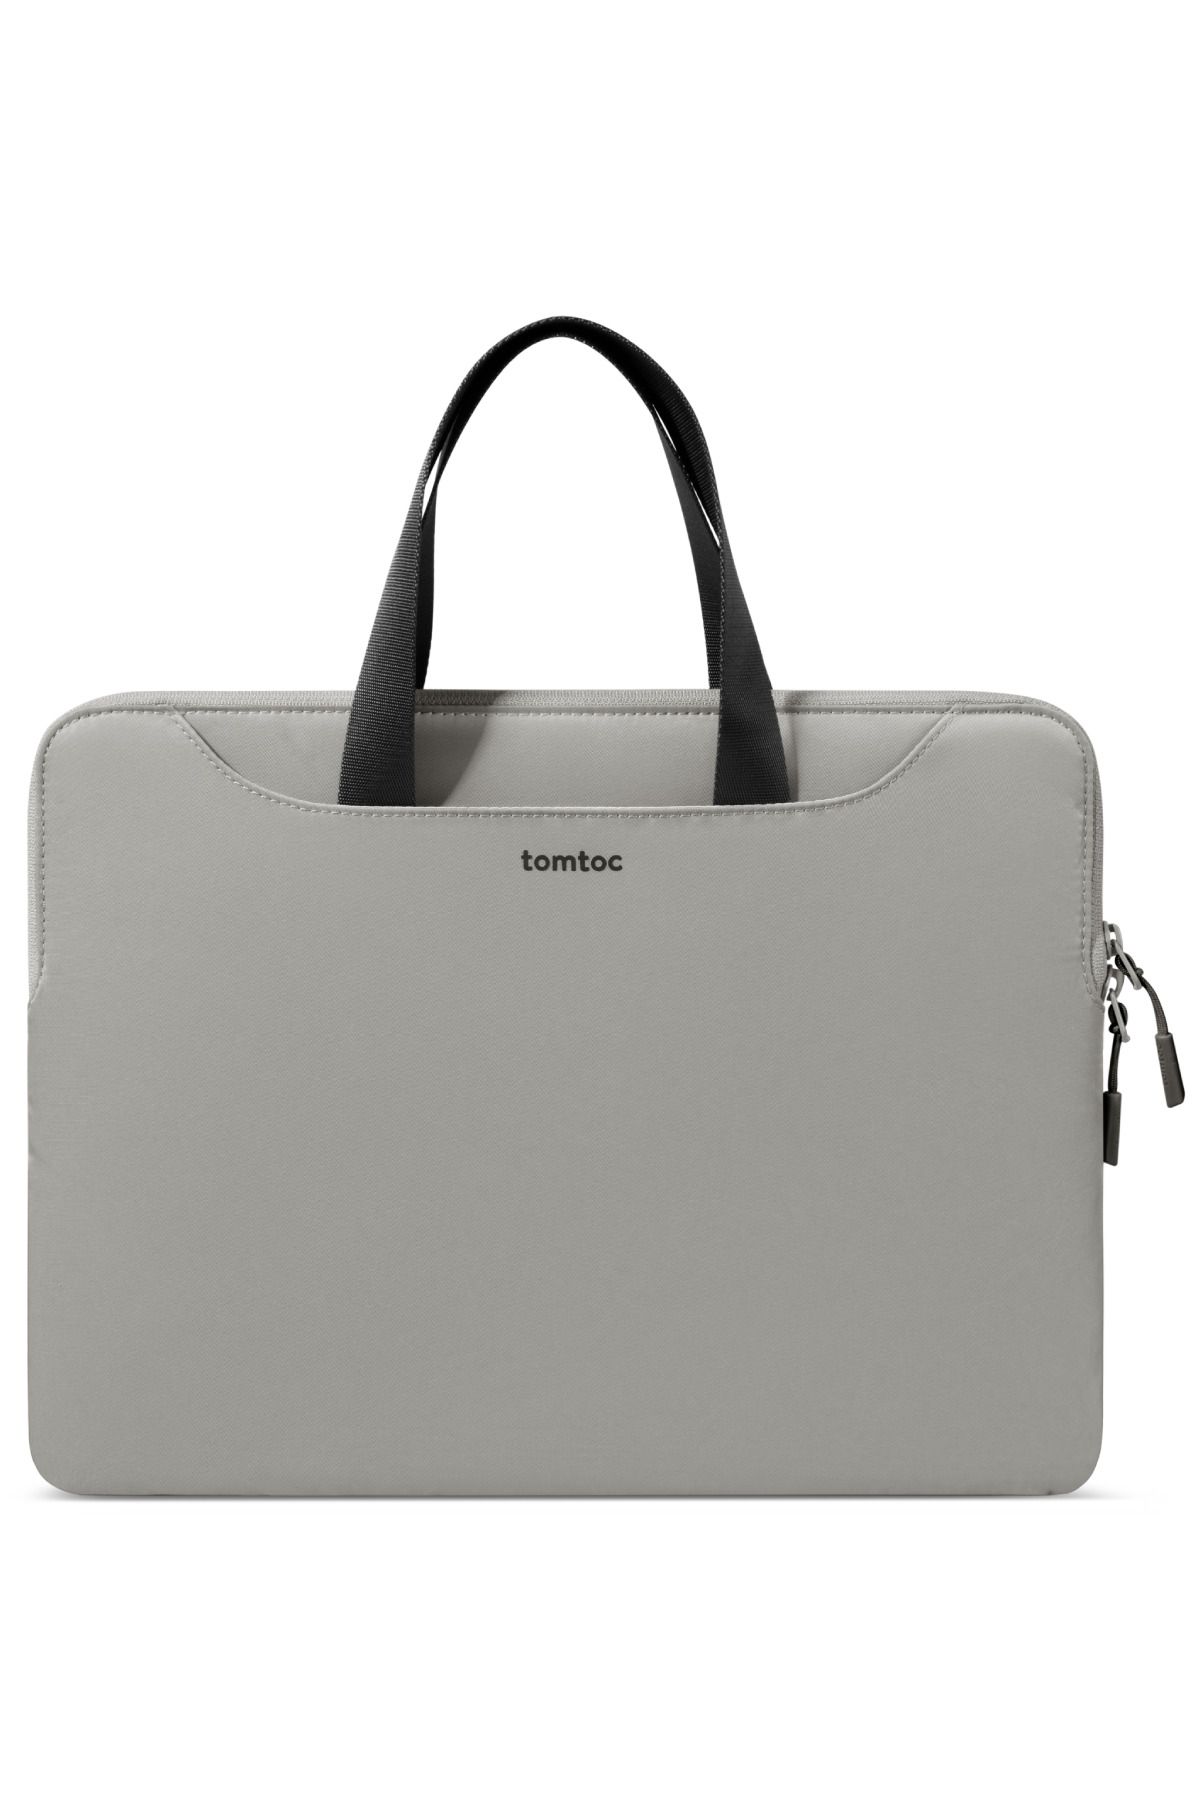 Tomtoc TheHer A21 13 - 13,5 inç Macbook Air & Pro Su Geçirmez Gri Laptop Notebook Çantası